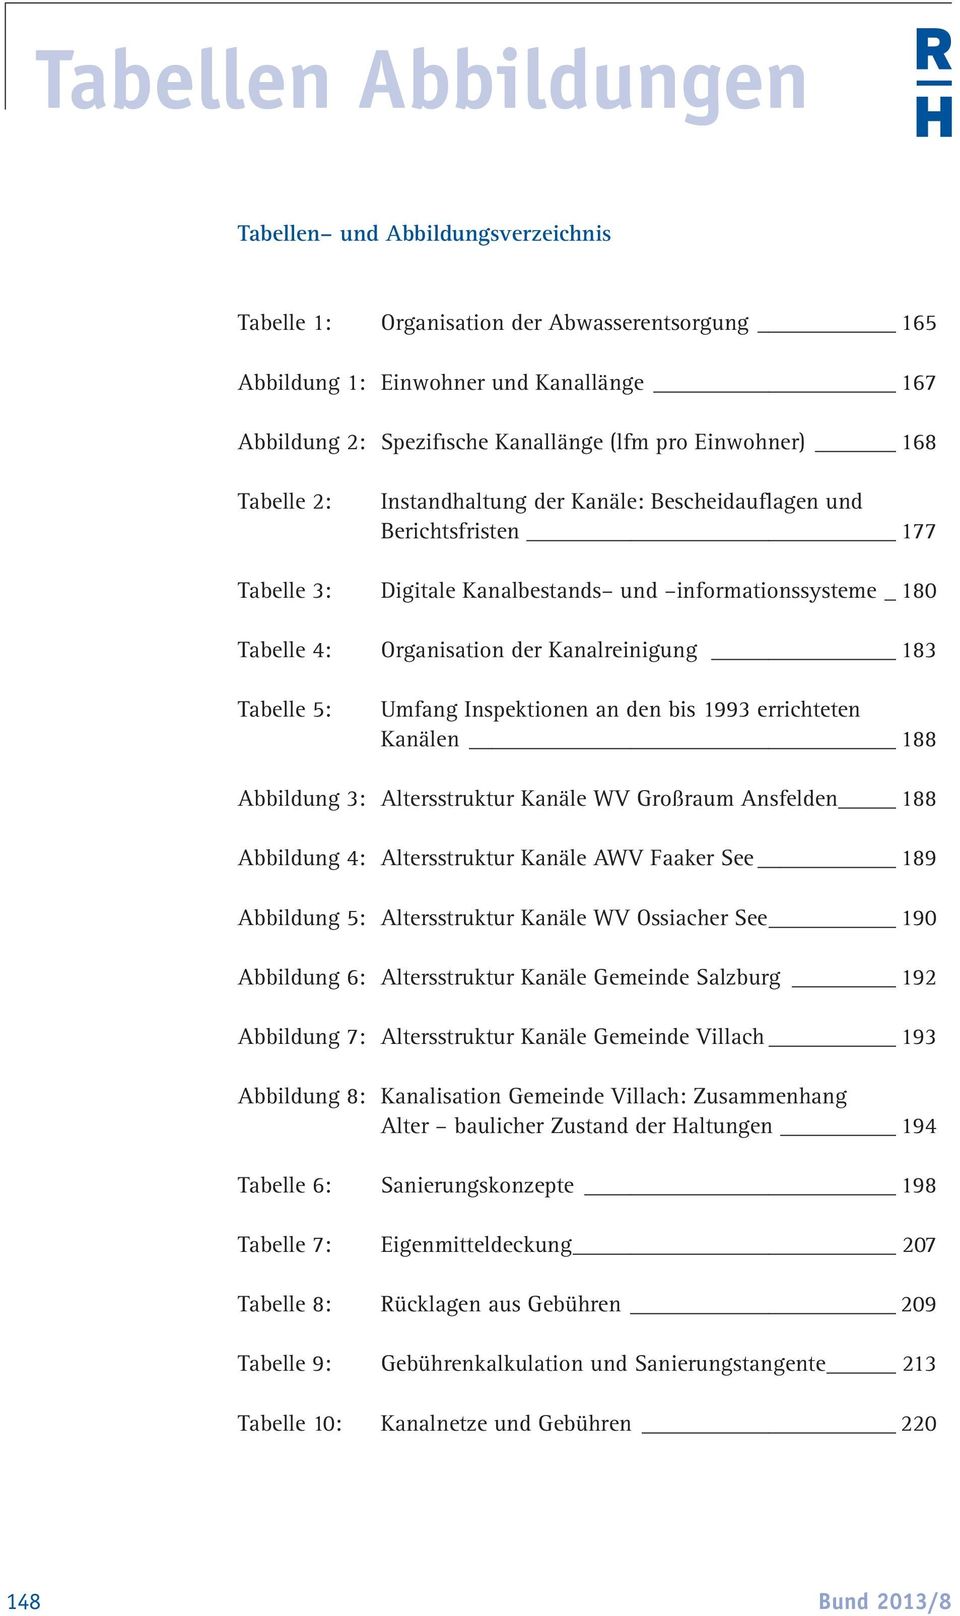 Kanalreinigung 183 Tabelle 5: Umfang Inspektionen an den bis 1993 errichteten Kanälen 188 Abbildung 3: Altersstruktur Kanäle WV Großraum Ansfelden 188 Abbildung 4: Altersstruktur Kanäle AWV Faaker